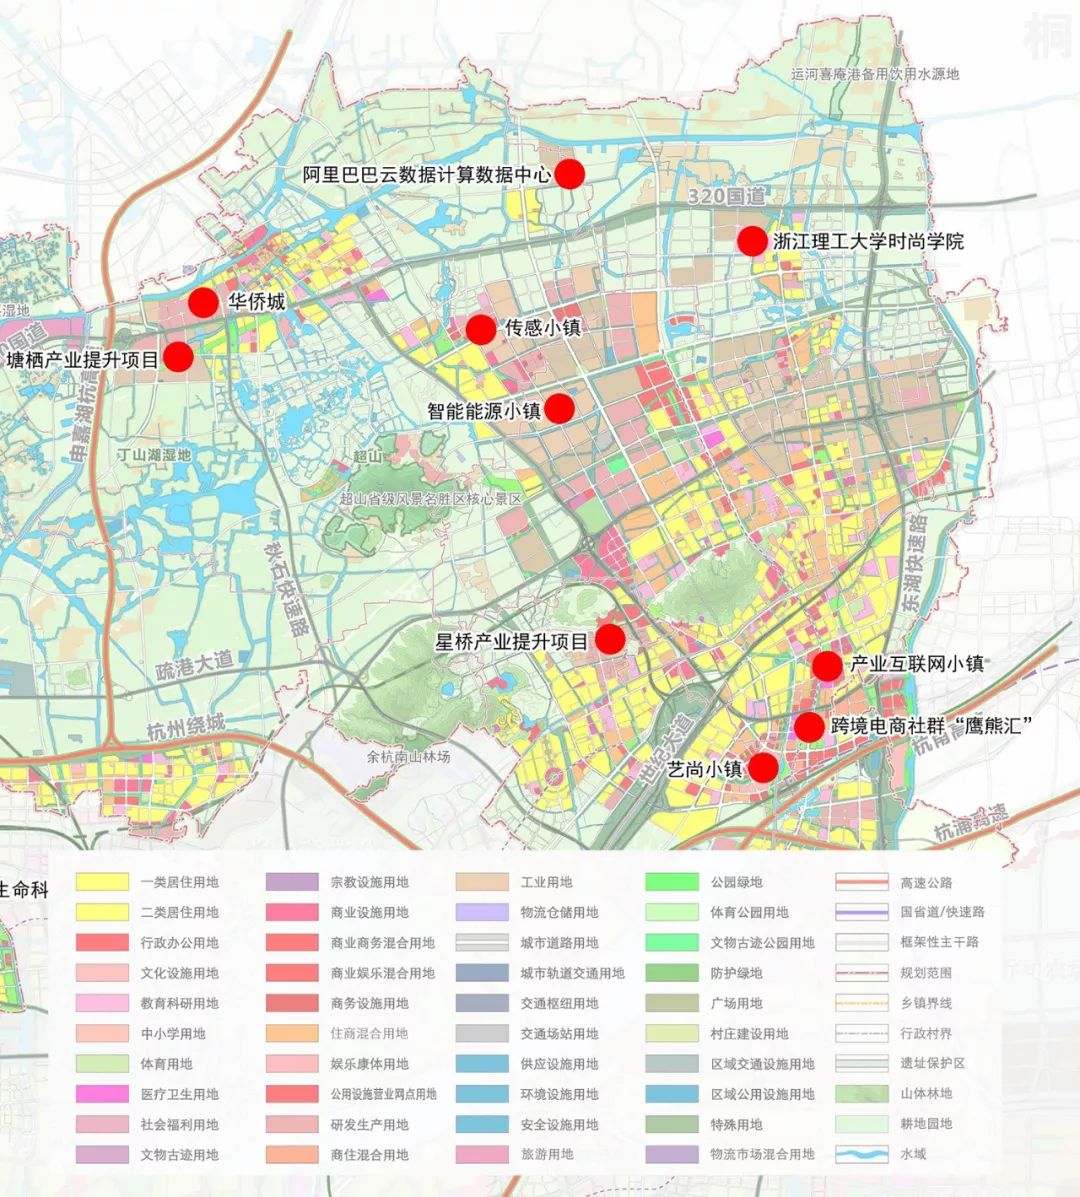 杭州市余杭分区规划(2017-2020)征求意见公布,大临平